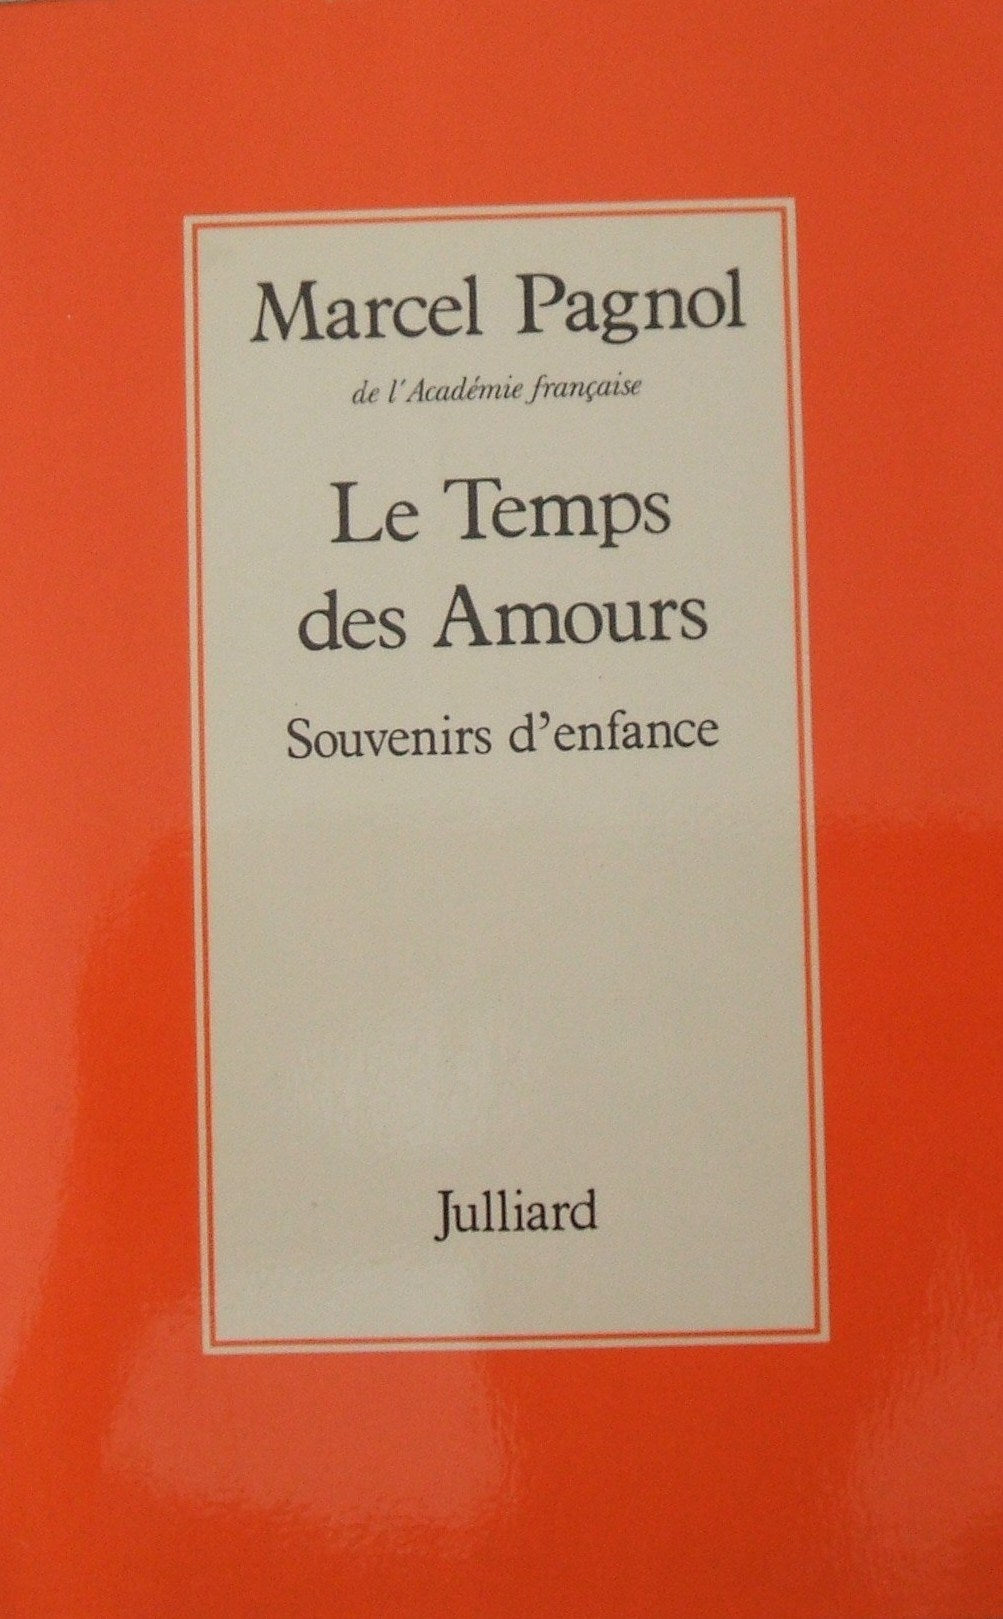 Livre ISBN 2260000789 Le temps des amours : souvenirs d'enfance (Marcel Pagnol)